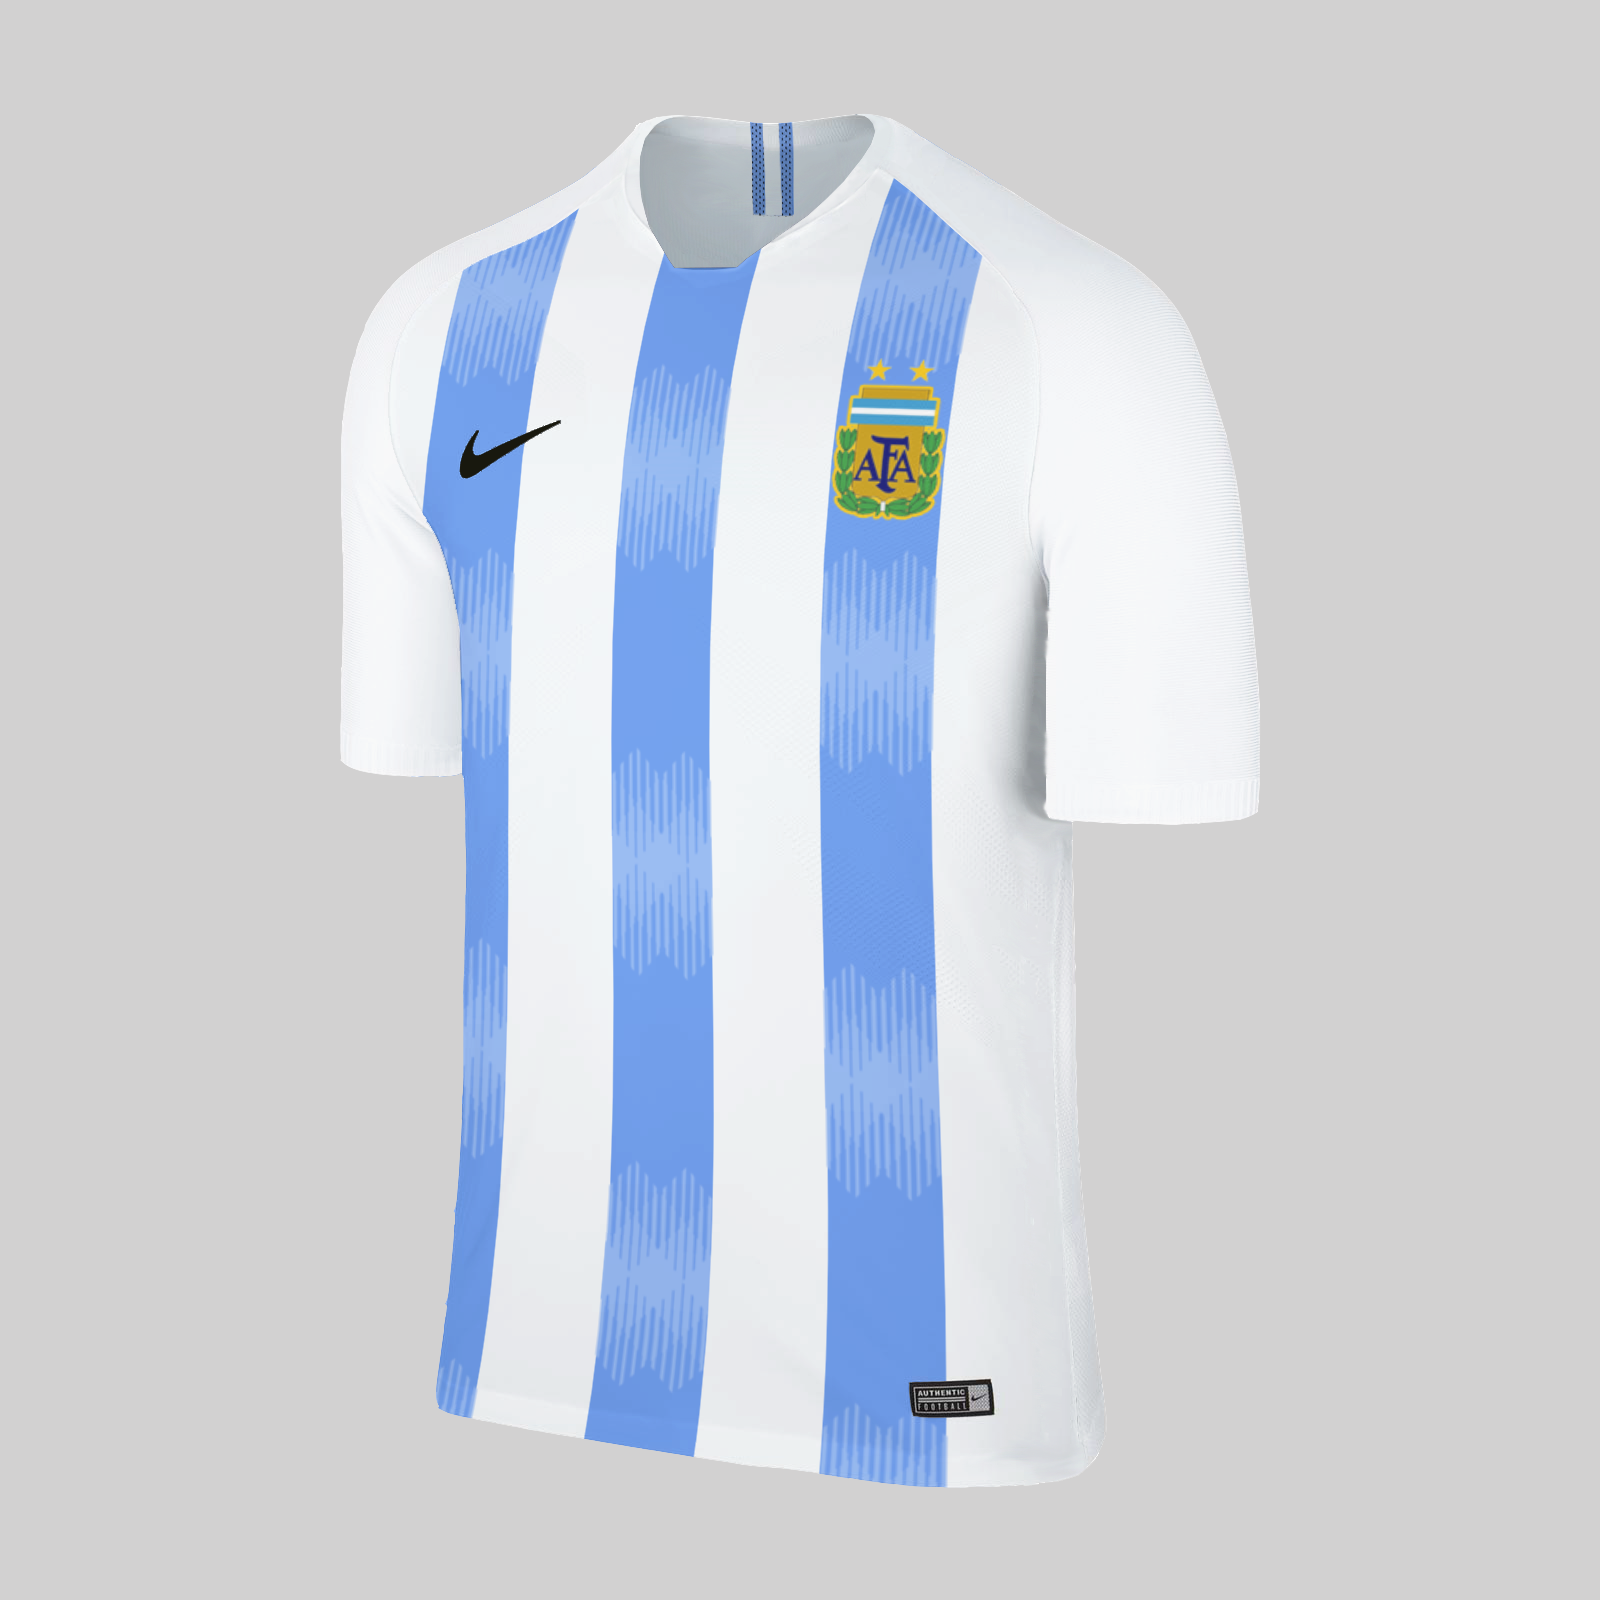 Adidas to Nike : Argentina